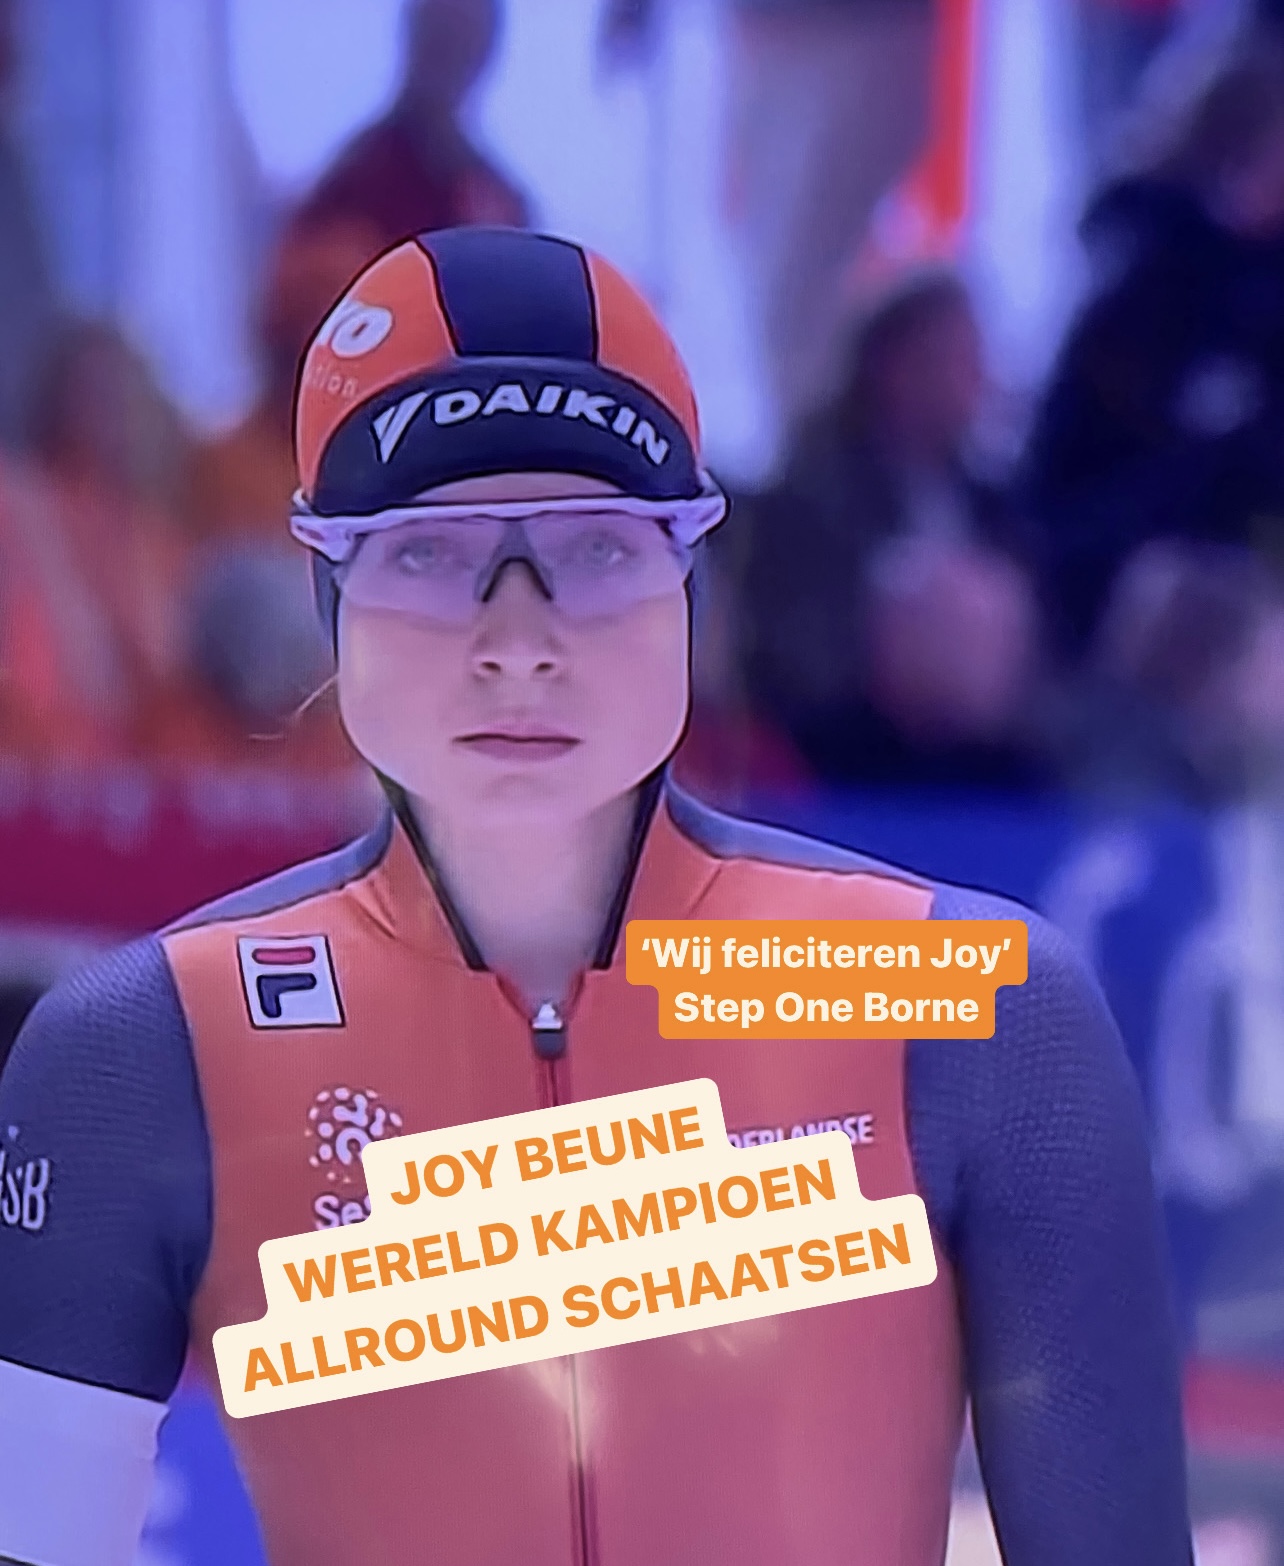 Joy Beune Wereldkampioen